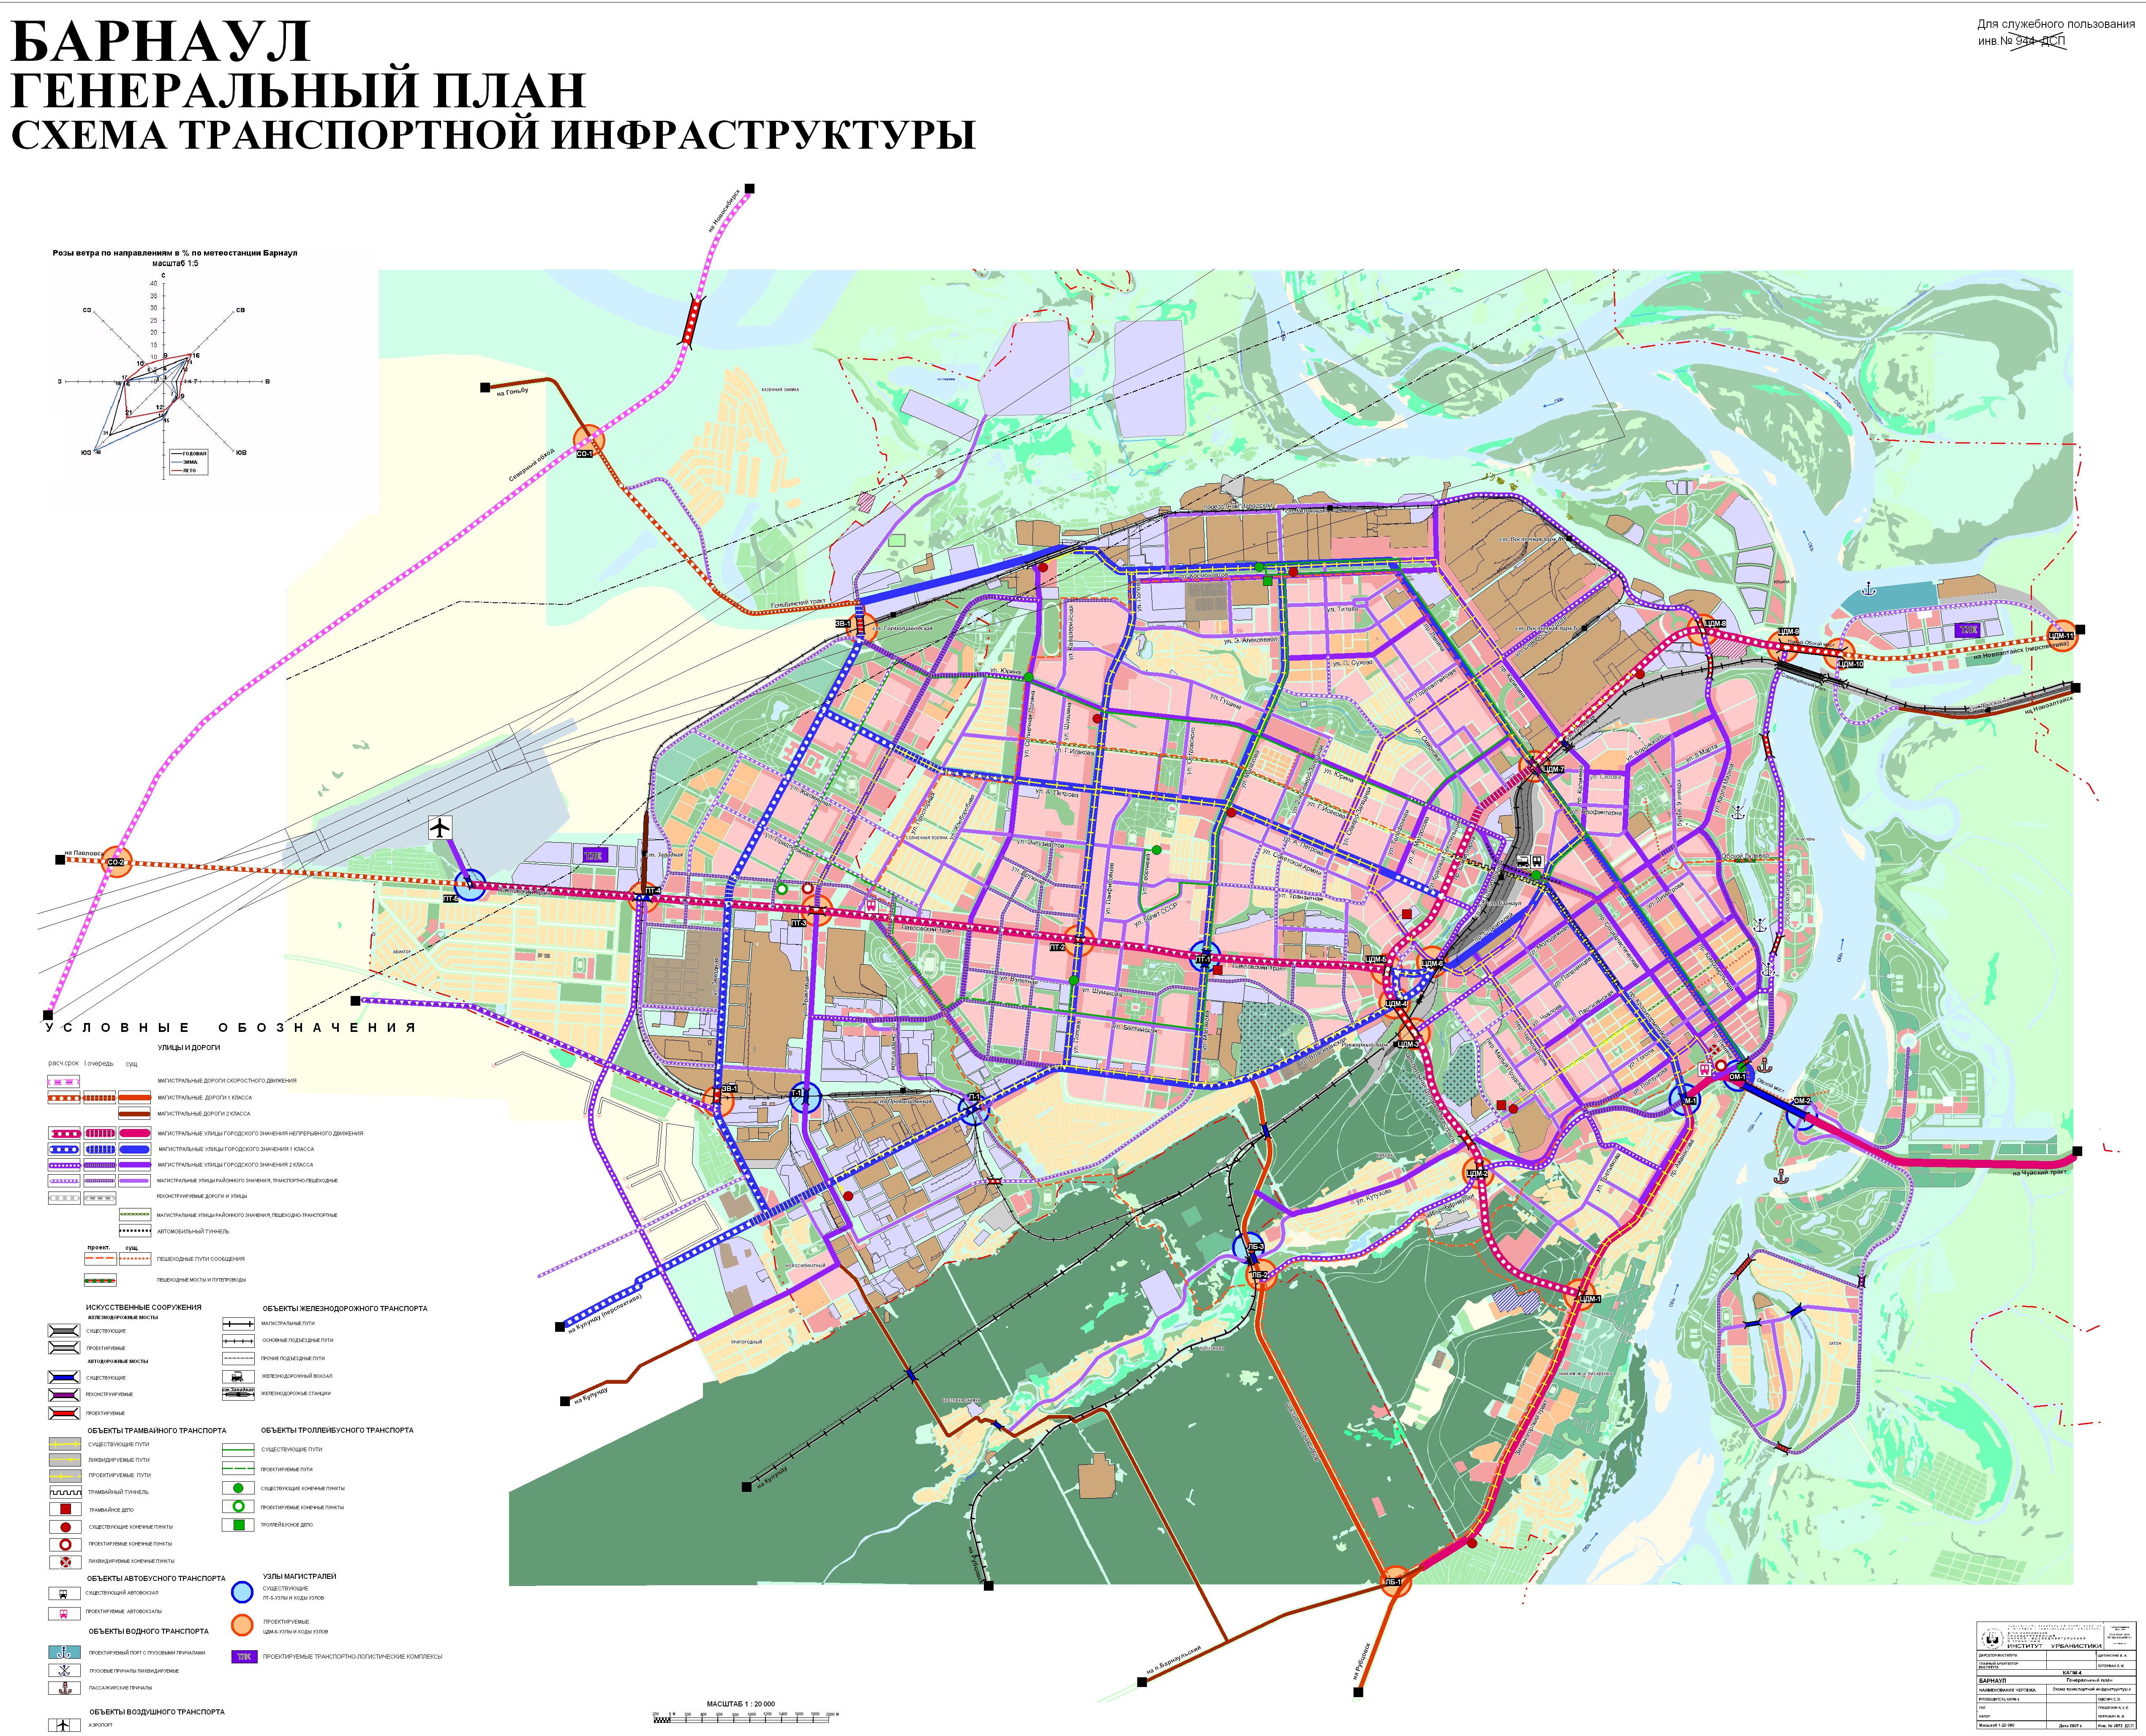 Барнаул схема города